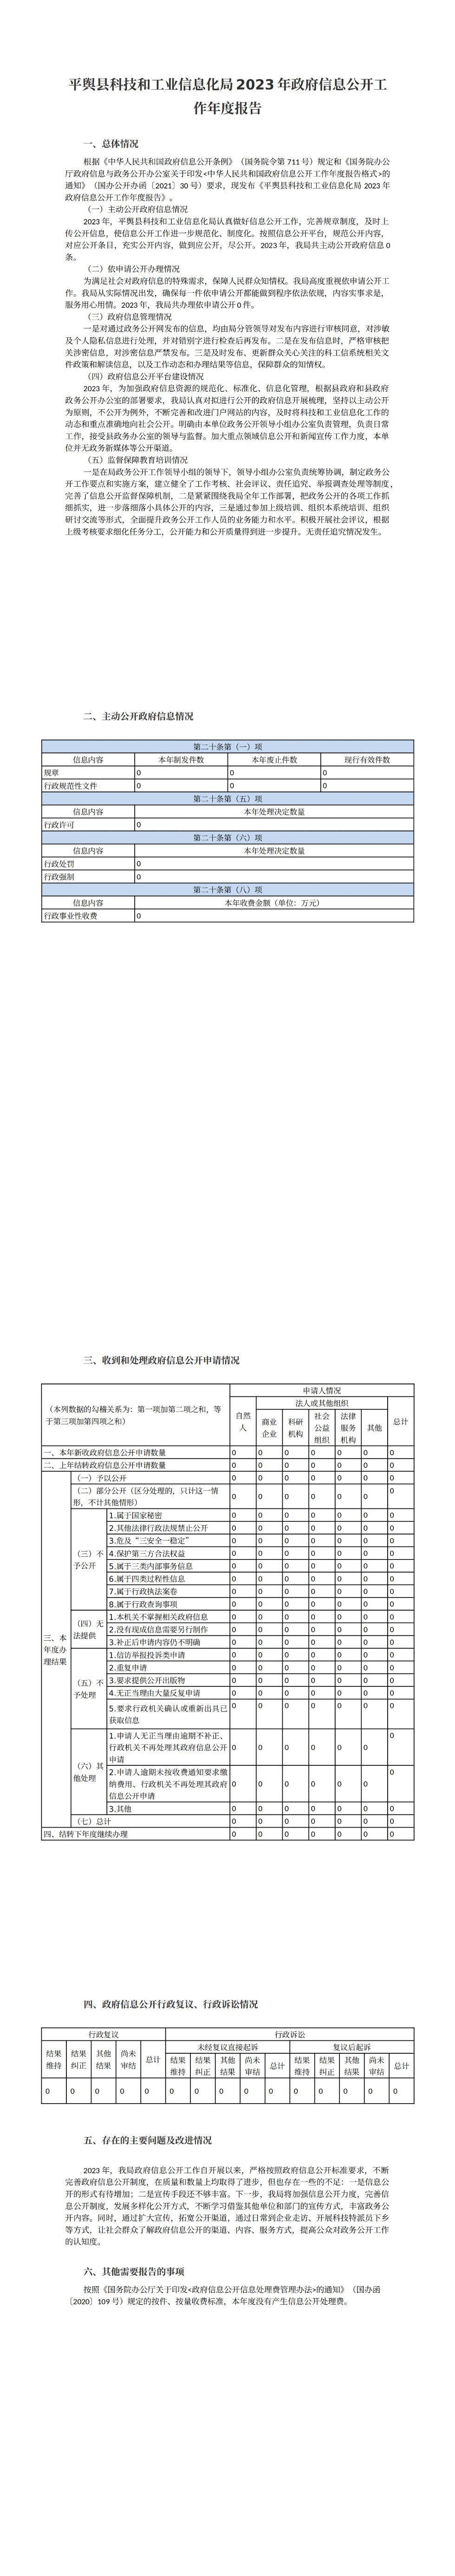 平舆县科技和工业信息化局2023年政府信息公开工作年度报告_00.jpg